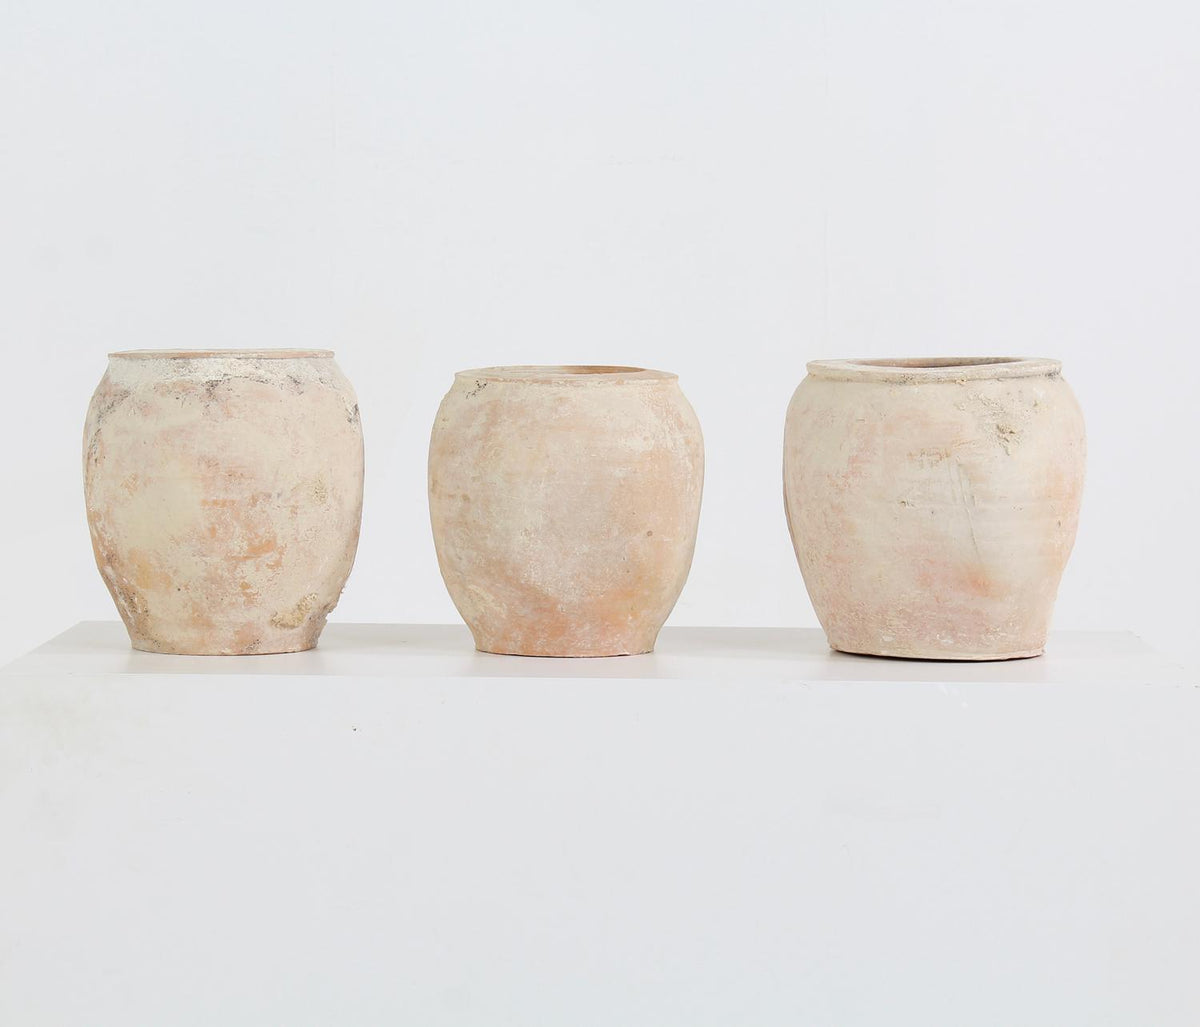 Collection of three terracotta Mediterranean storage jars